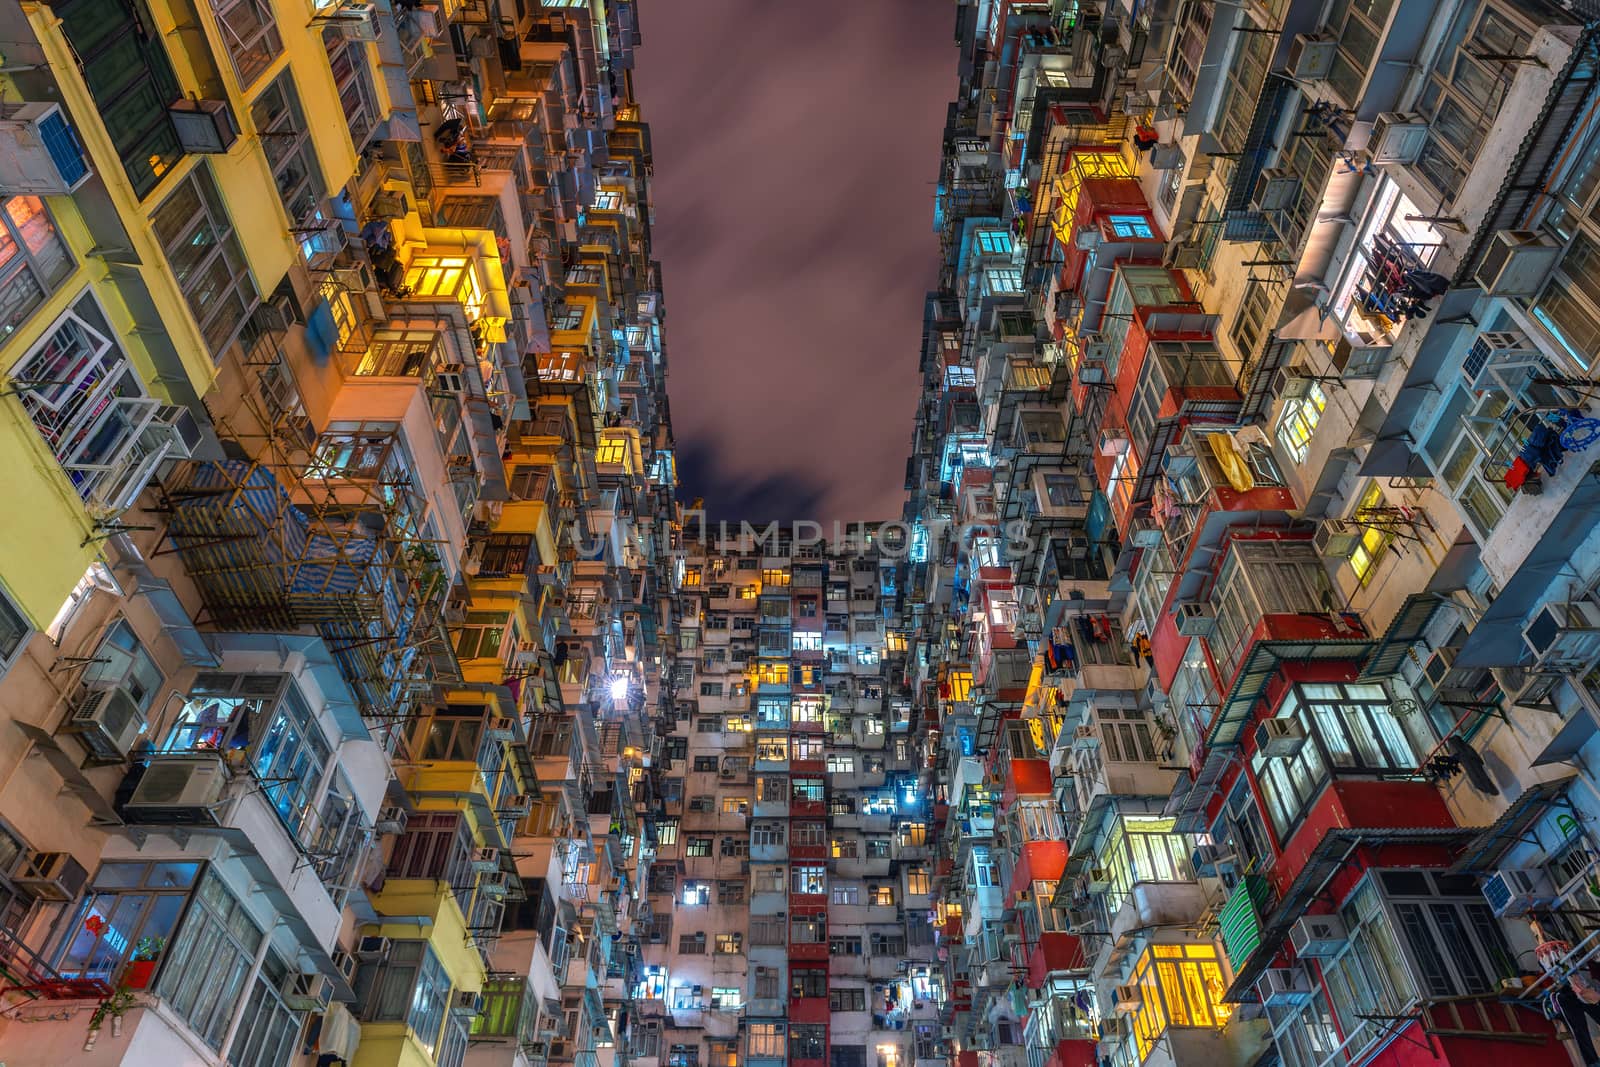 The old building at night, Hong Kong.